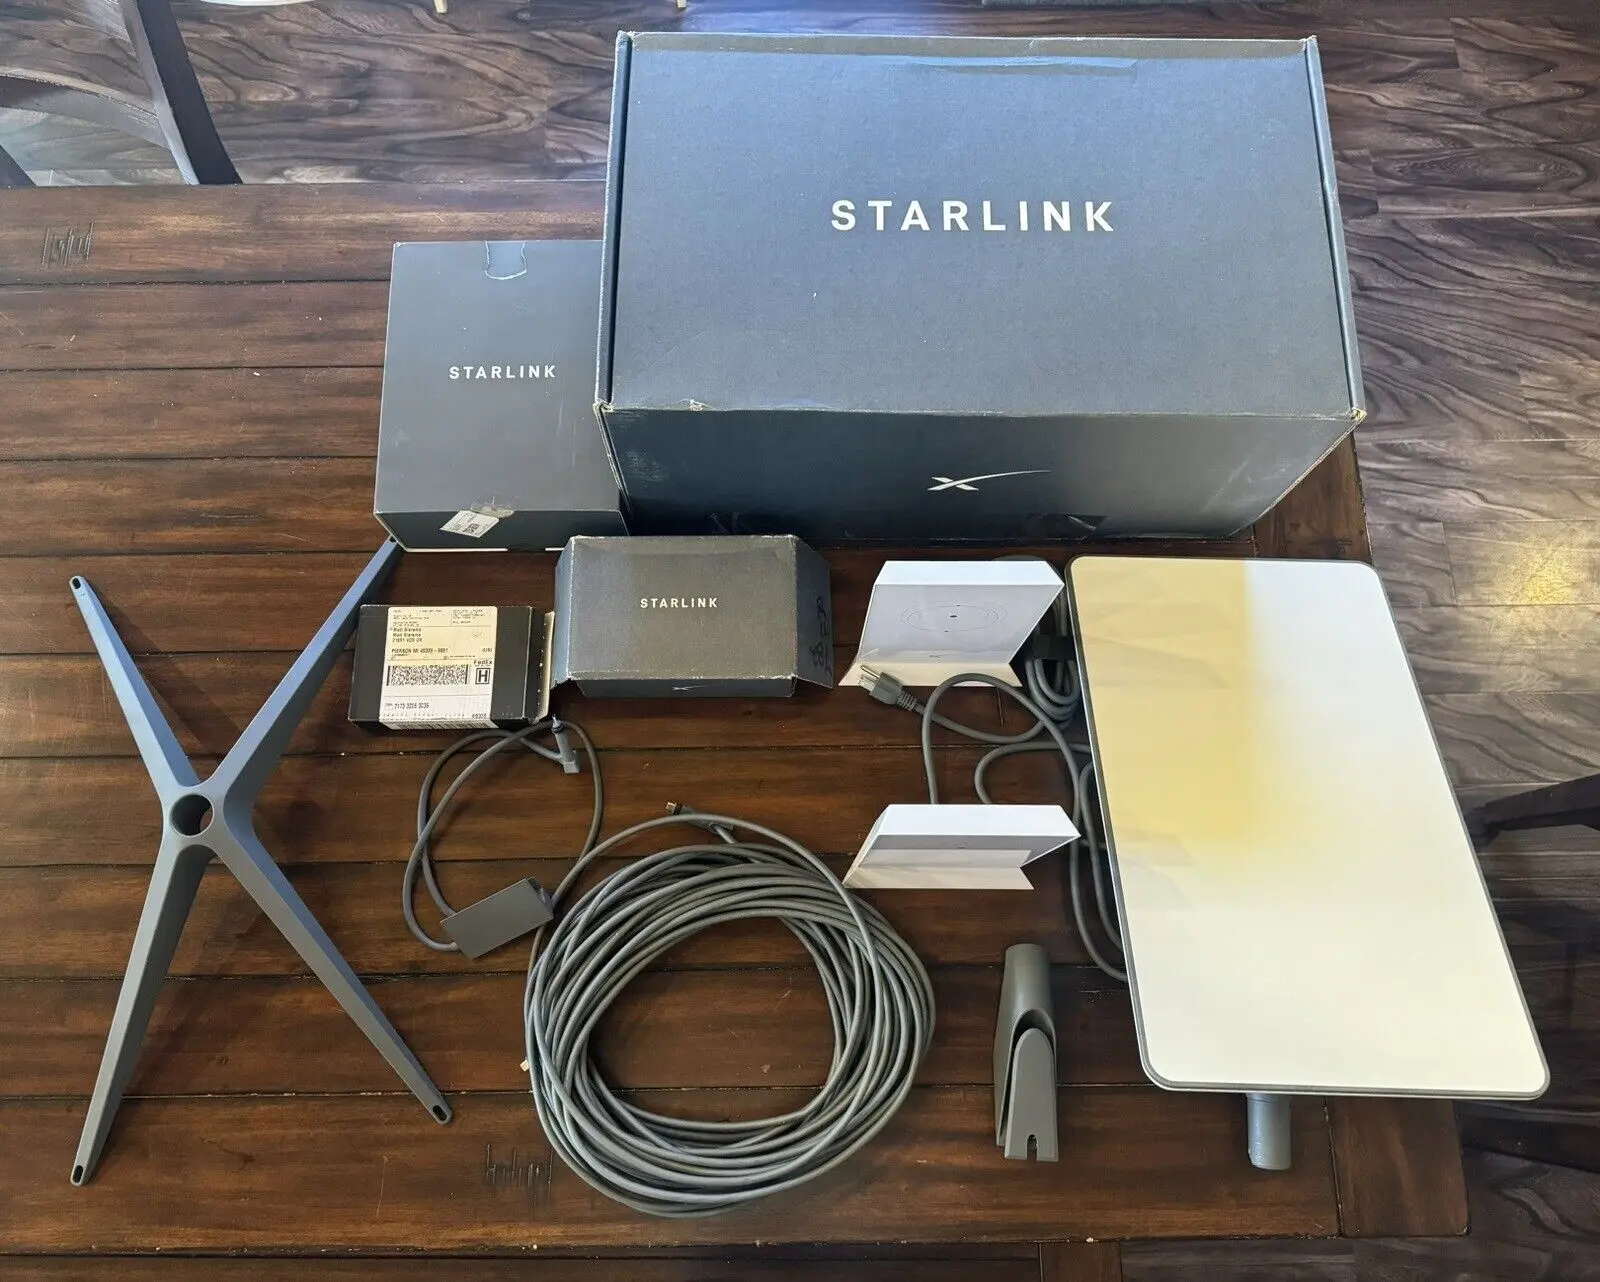 FR Vendas quentes Novo kit de antena parabólica de Internet Starlink versão RVs v2 (ROAM) Starlink 2a geração